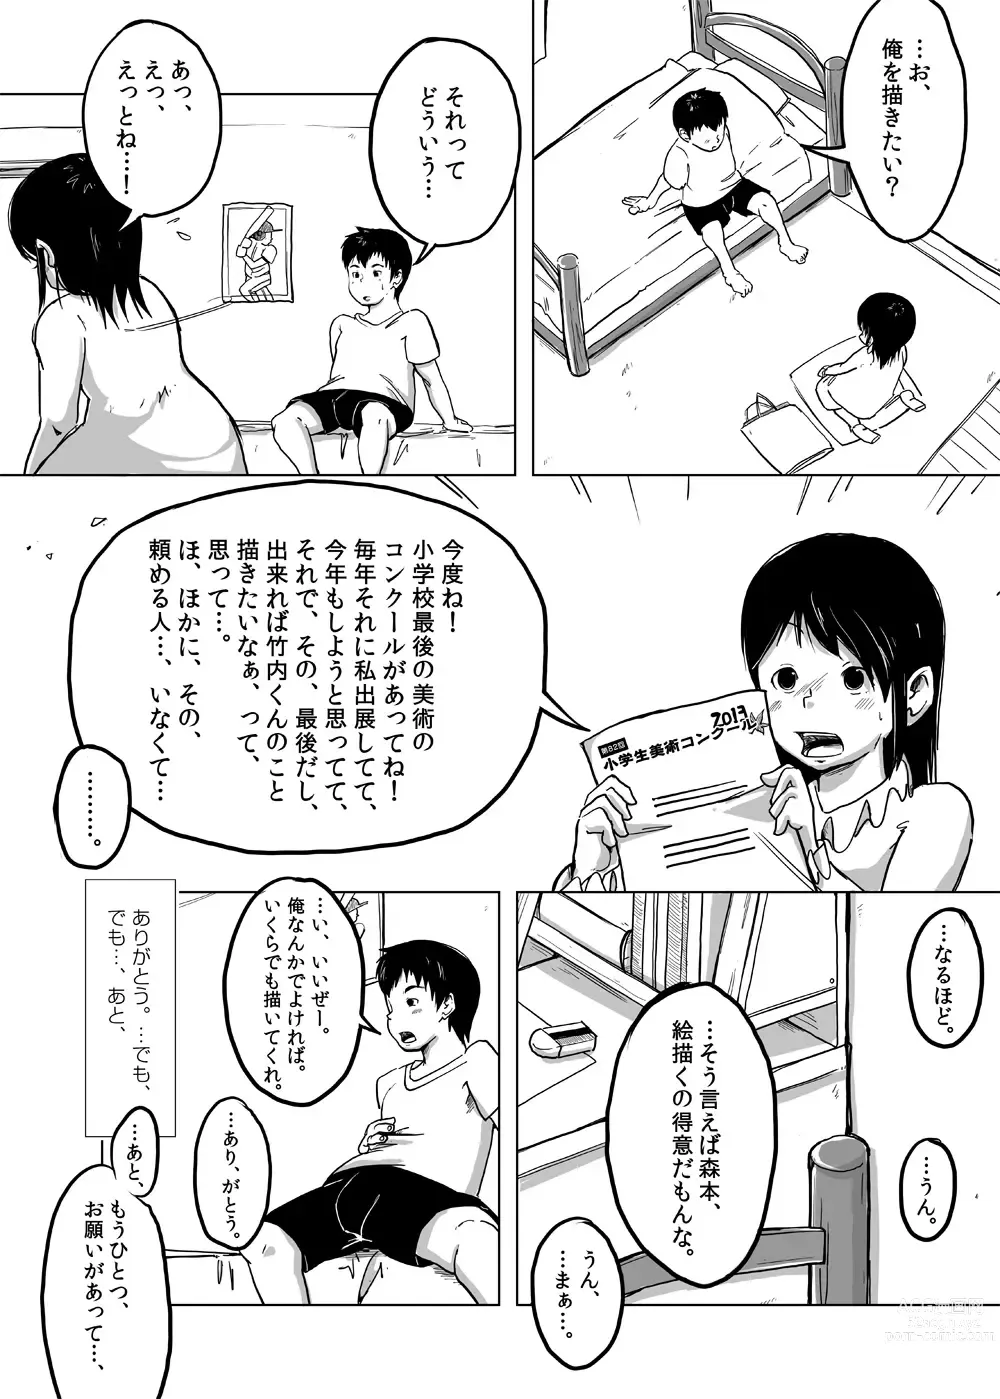 Page 5 of doujinshi CFNM Nikki ~ Chiisana Seishun Monogatari ~ Vol. 4